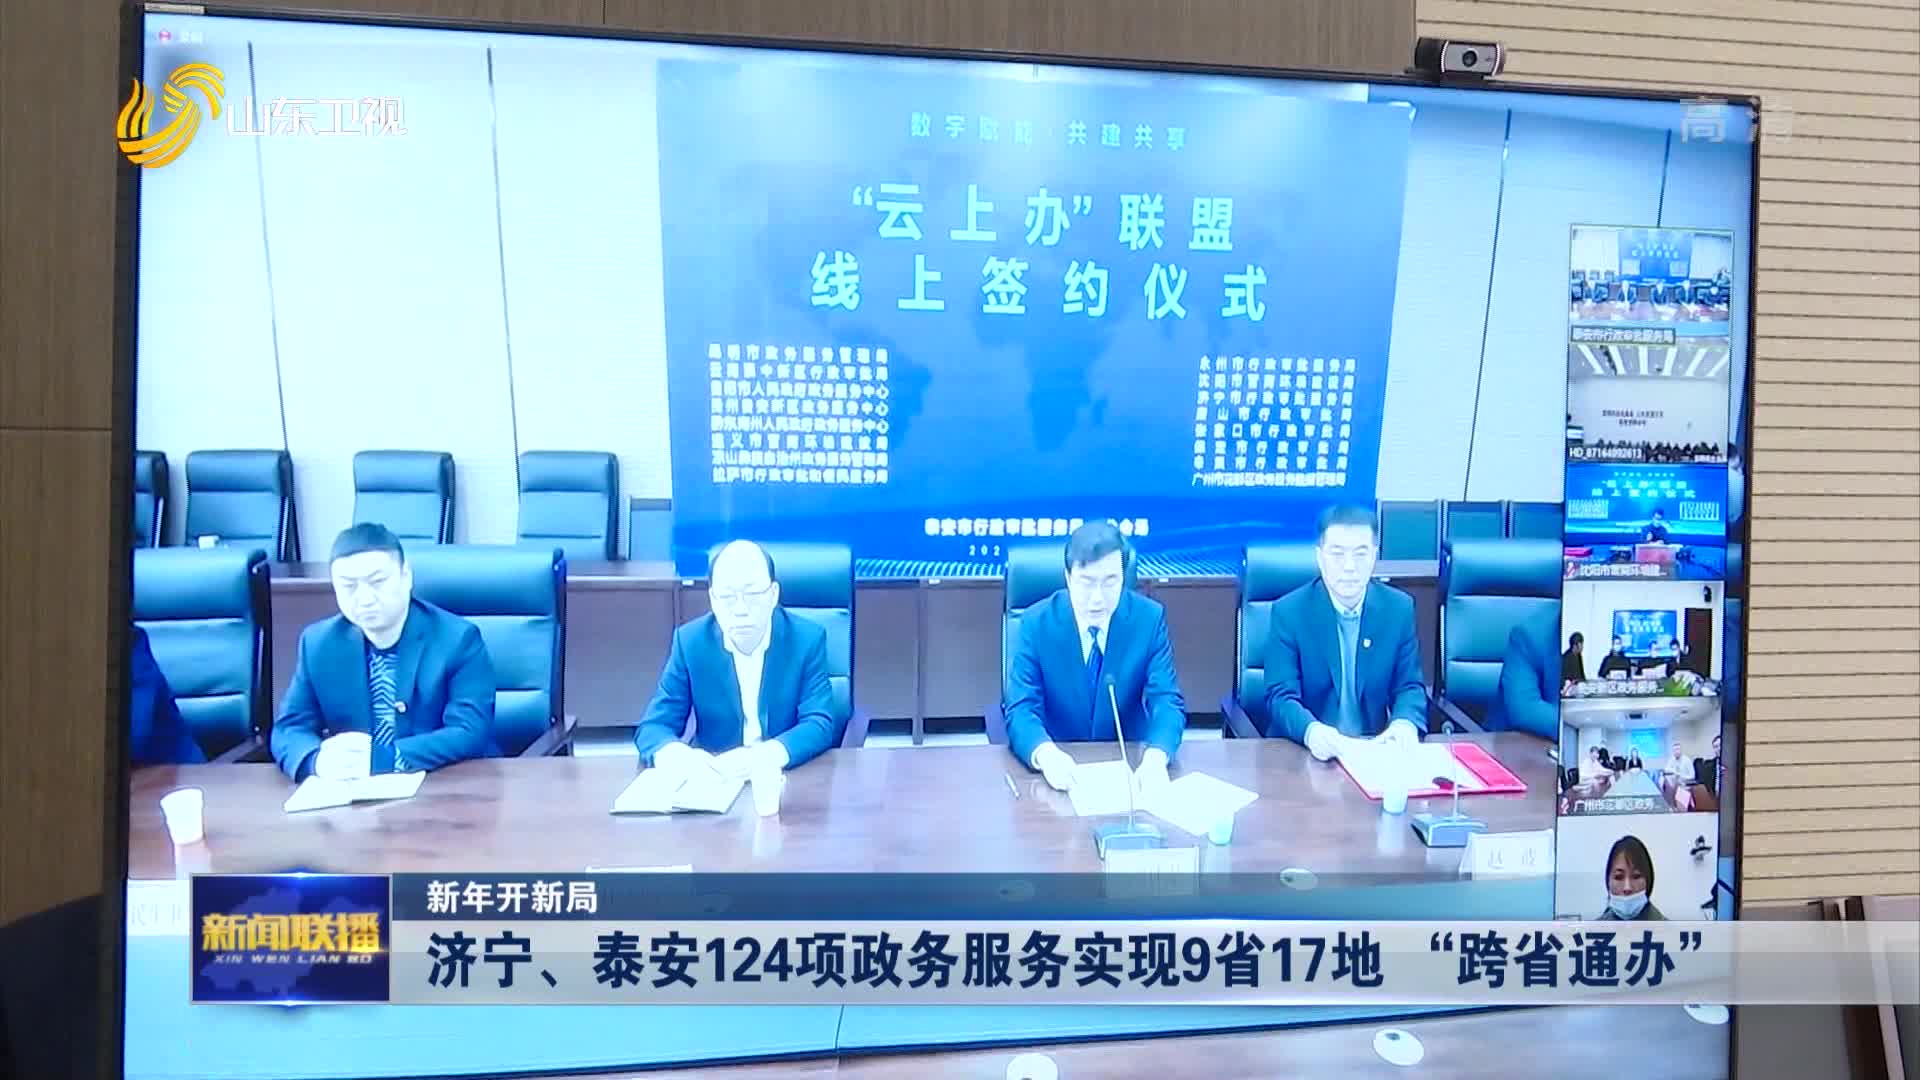 【新年开新局】济宁、泰安124项政务服务实现9省17地 “跨省通办”